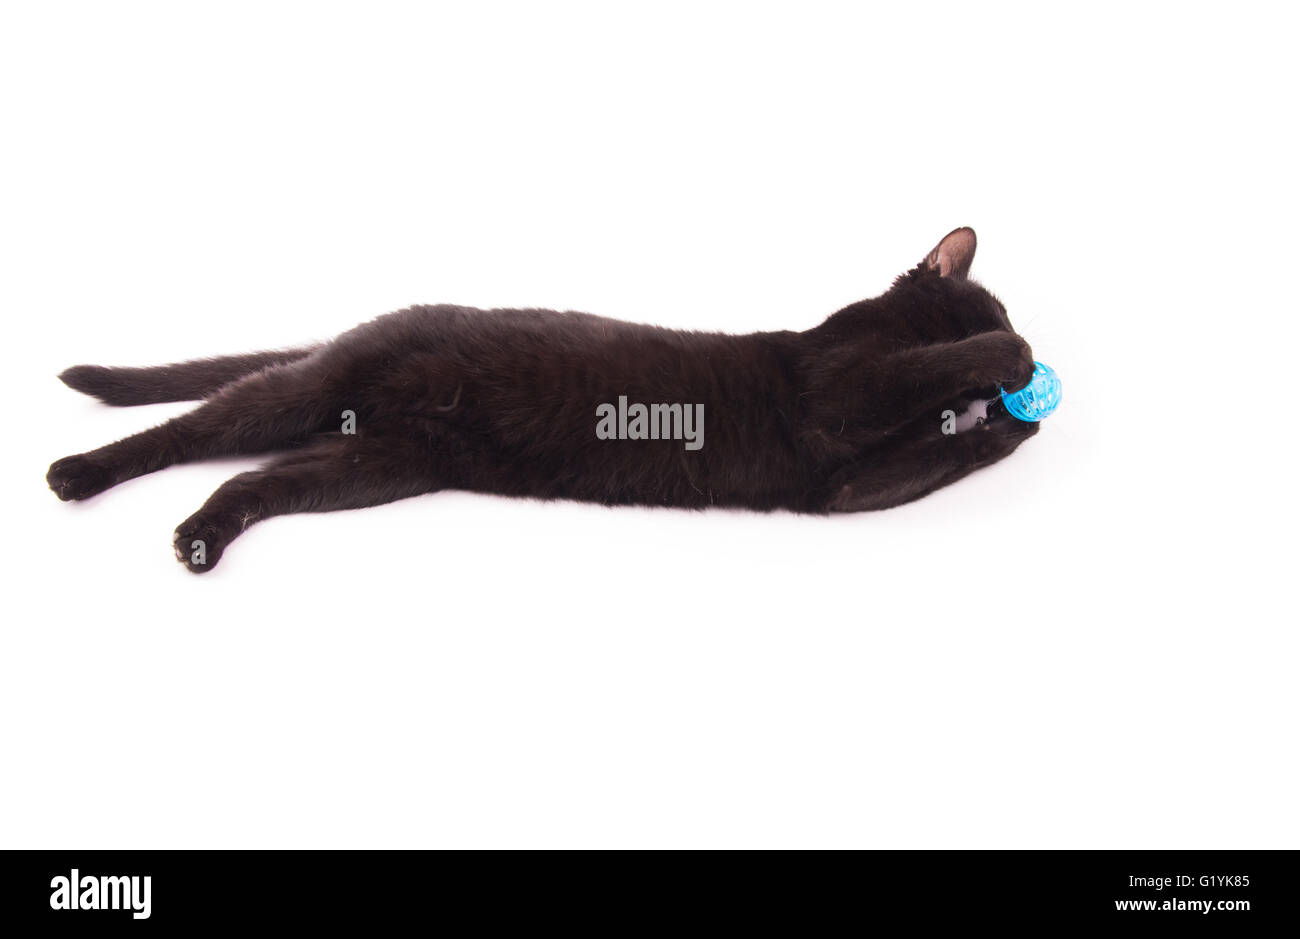 Gato negro mordiendo en una bola azul mientras lo sujeta con sus patas, sobre blanco Foto de stock